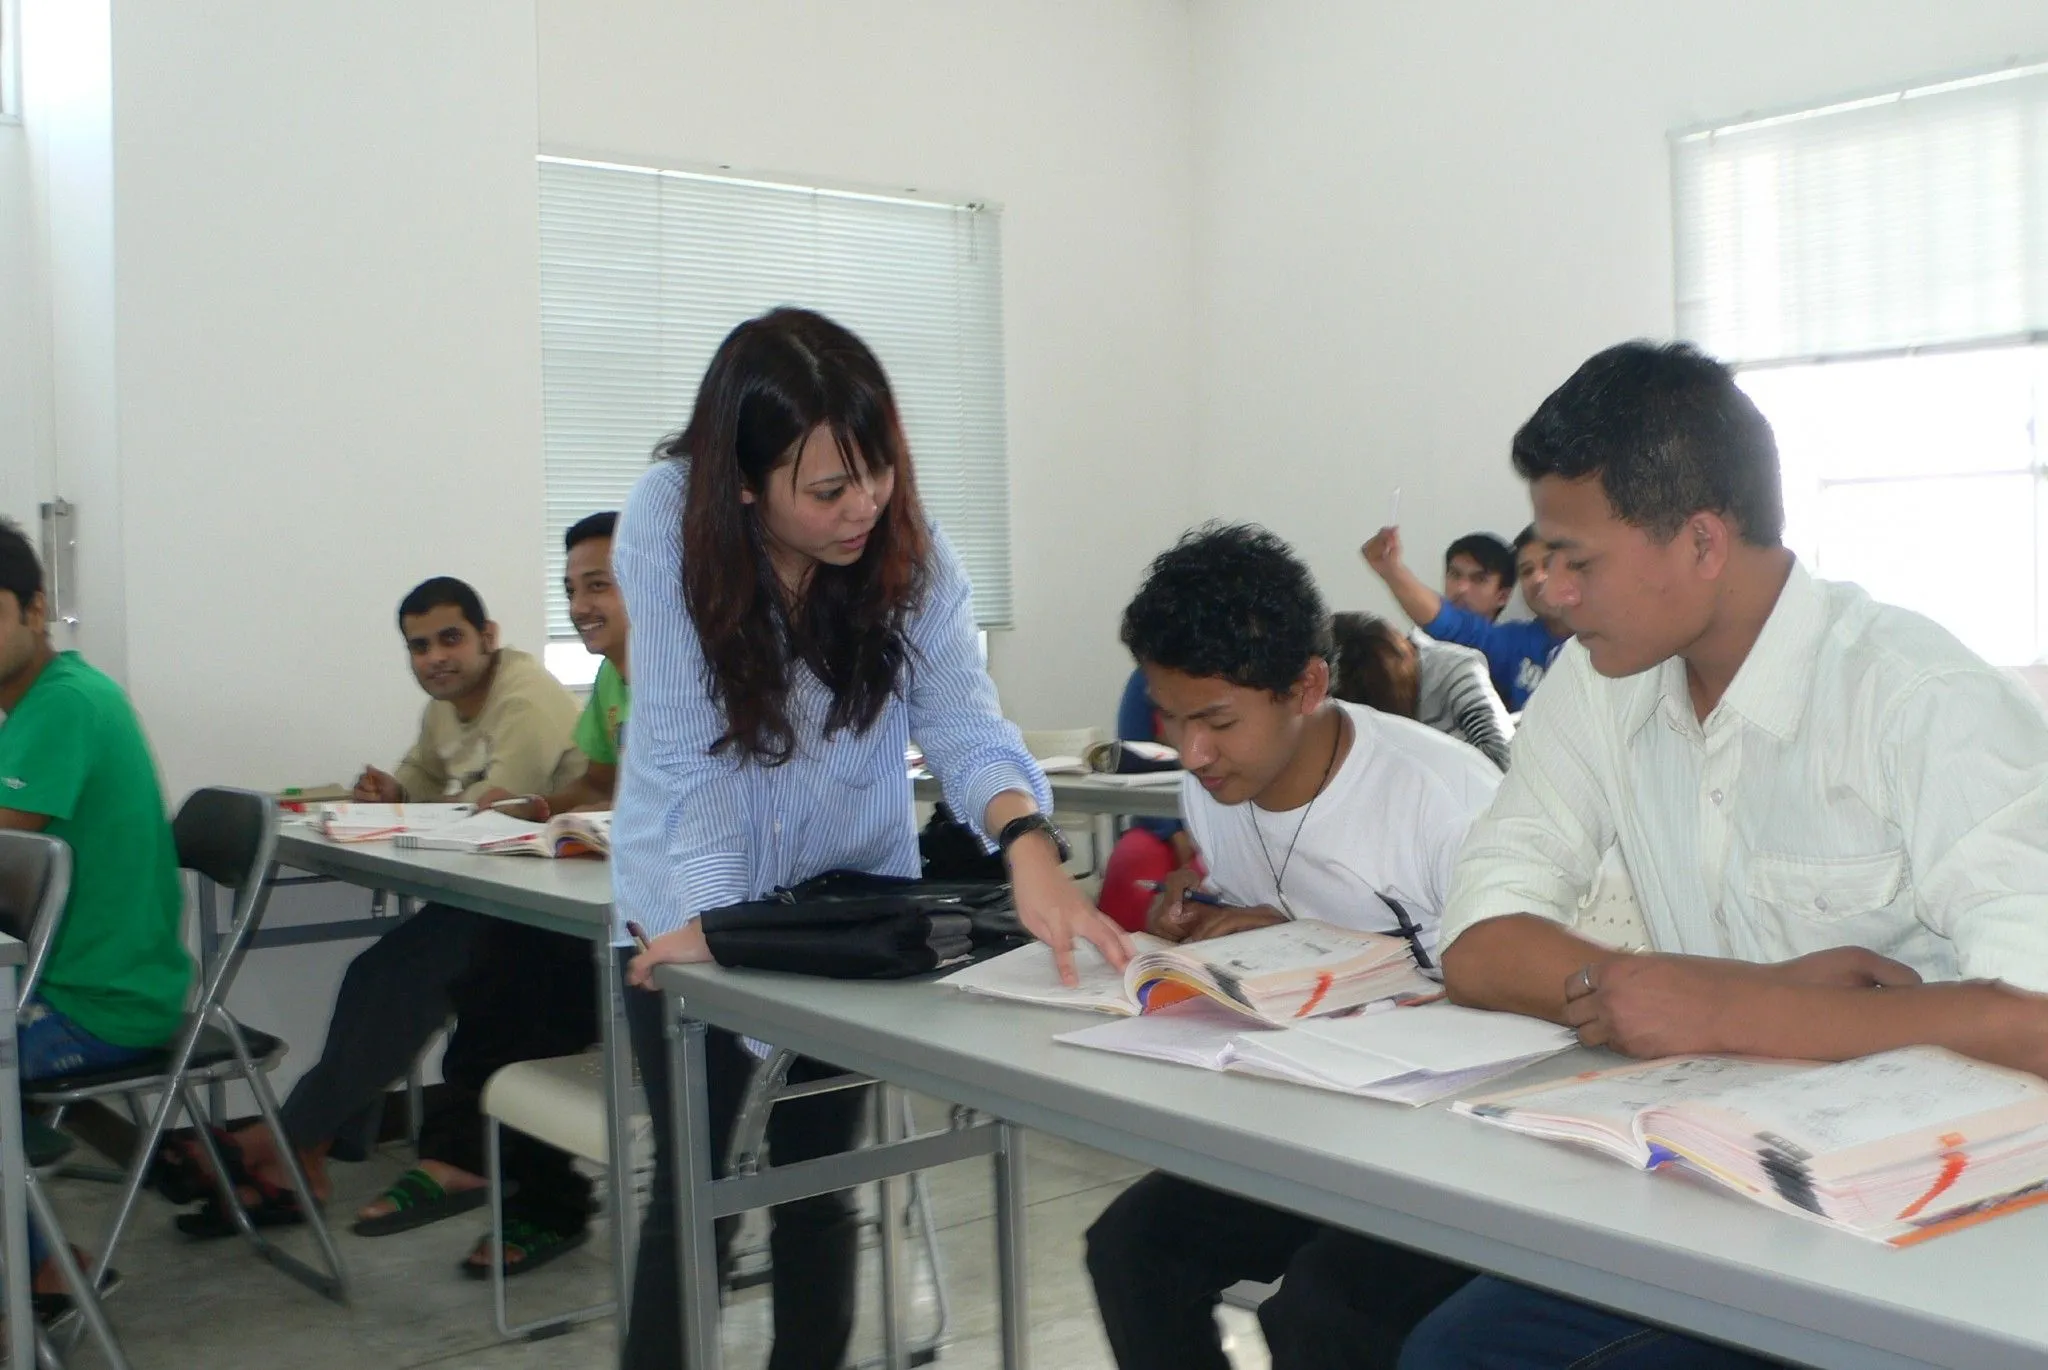 Japanse teacher giving instruction